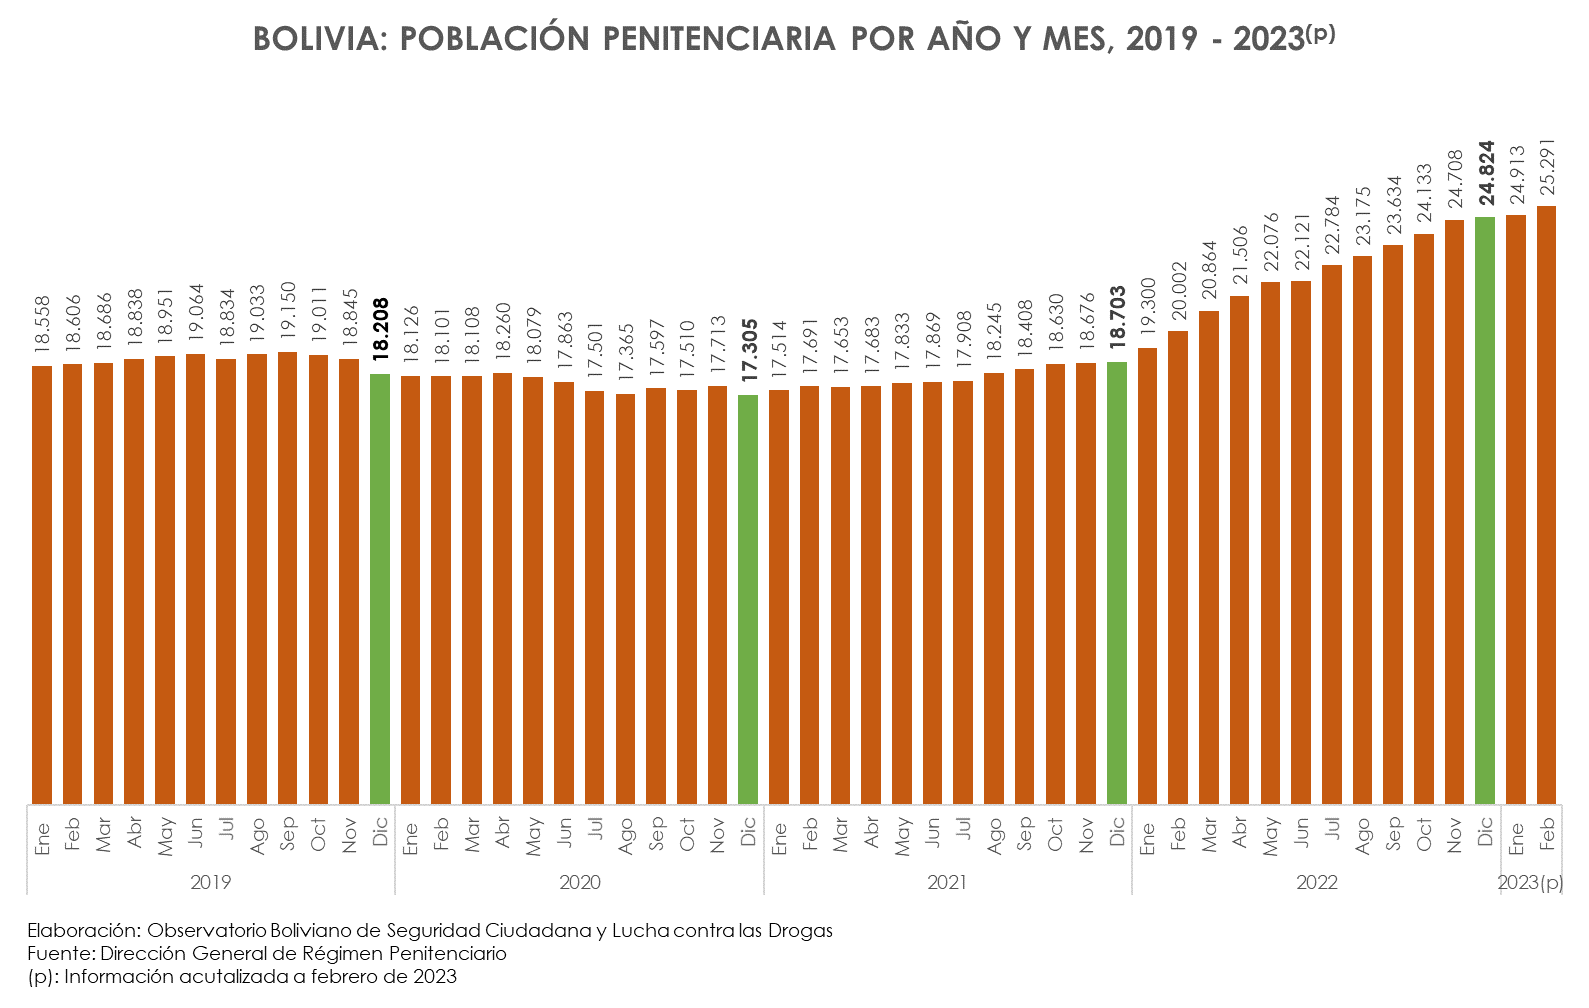 Bolivia: Población penitenciaria por año y mes, 2019-2023